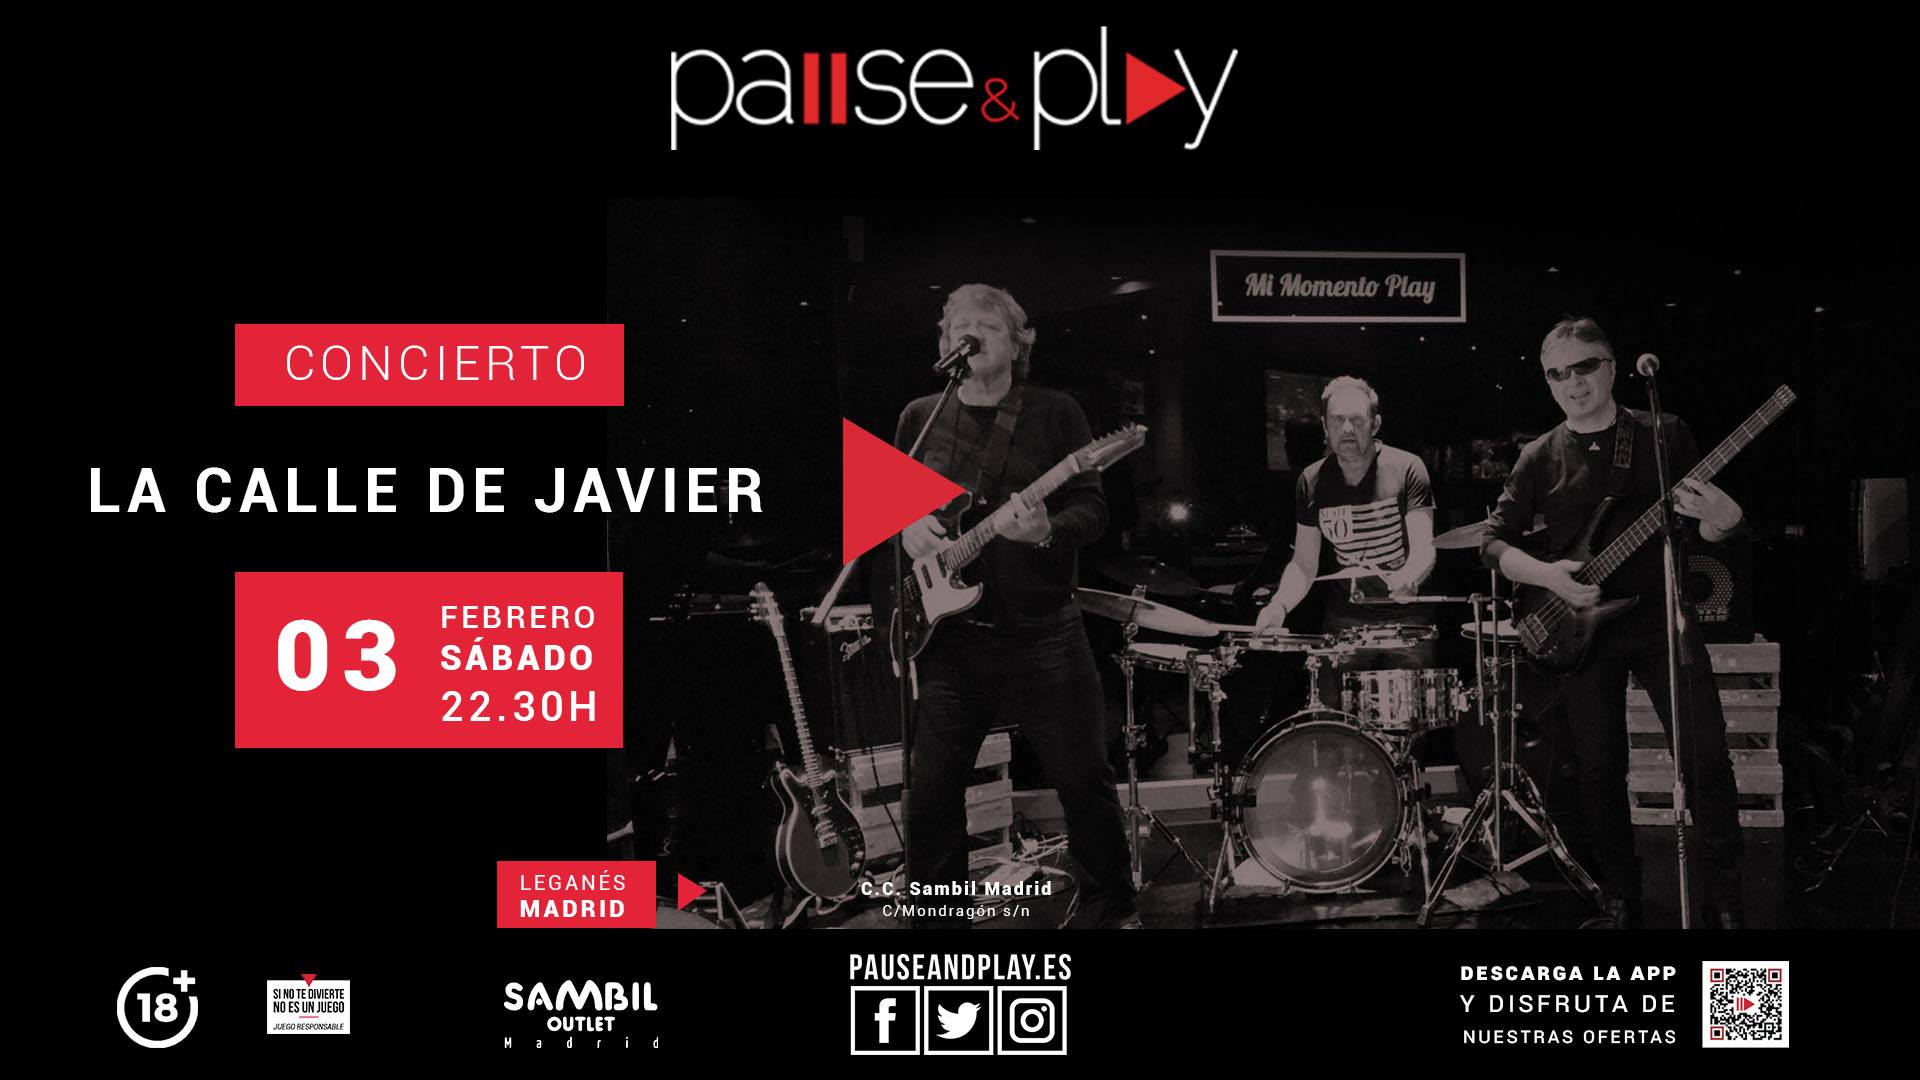 ¡La Calle de Javier en concierto! - Pause&Play Sambil